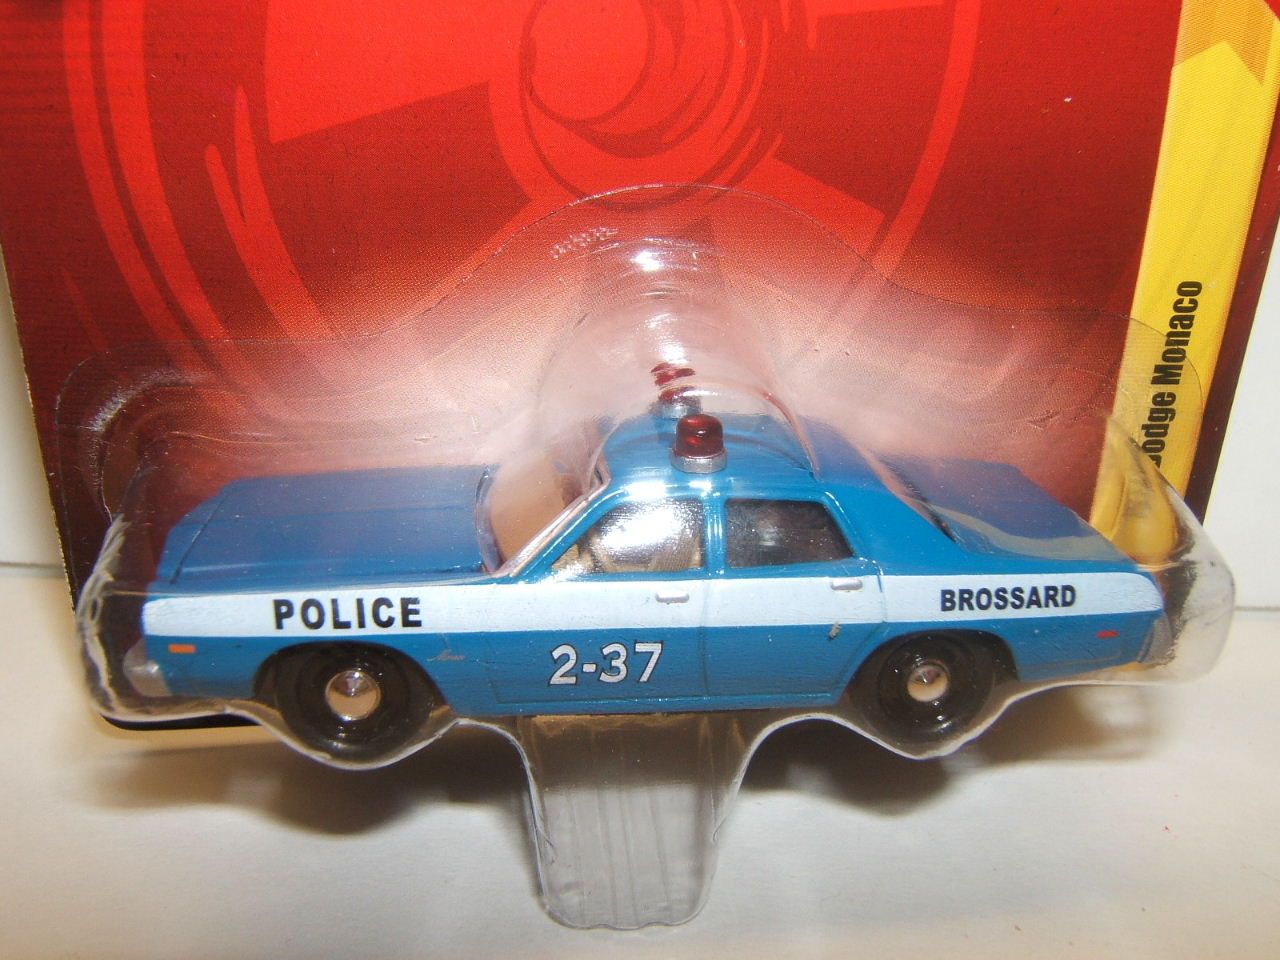 FOREVER 64 R19* 1977 Dodge Monaco Brossard POLICE Dept Car = Johnny 